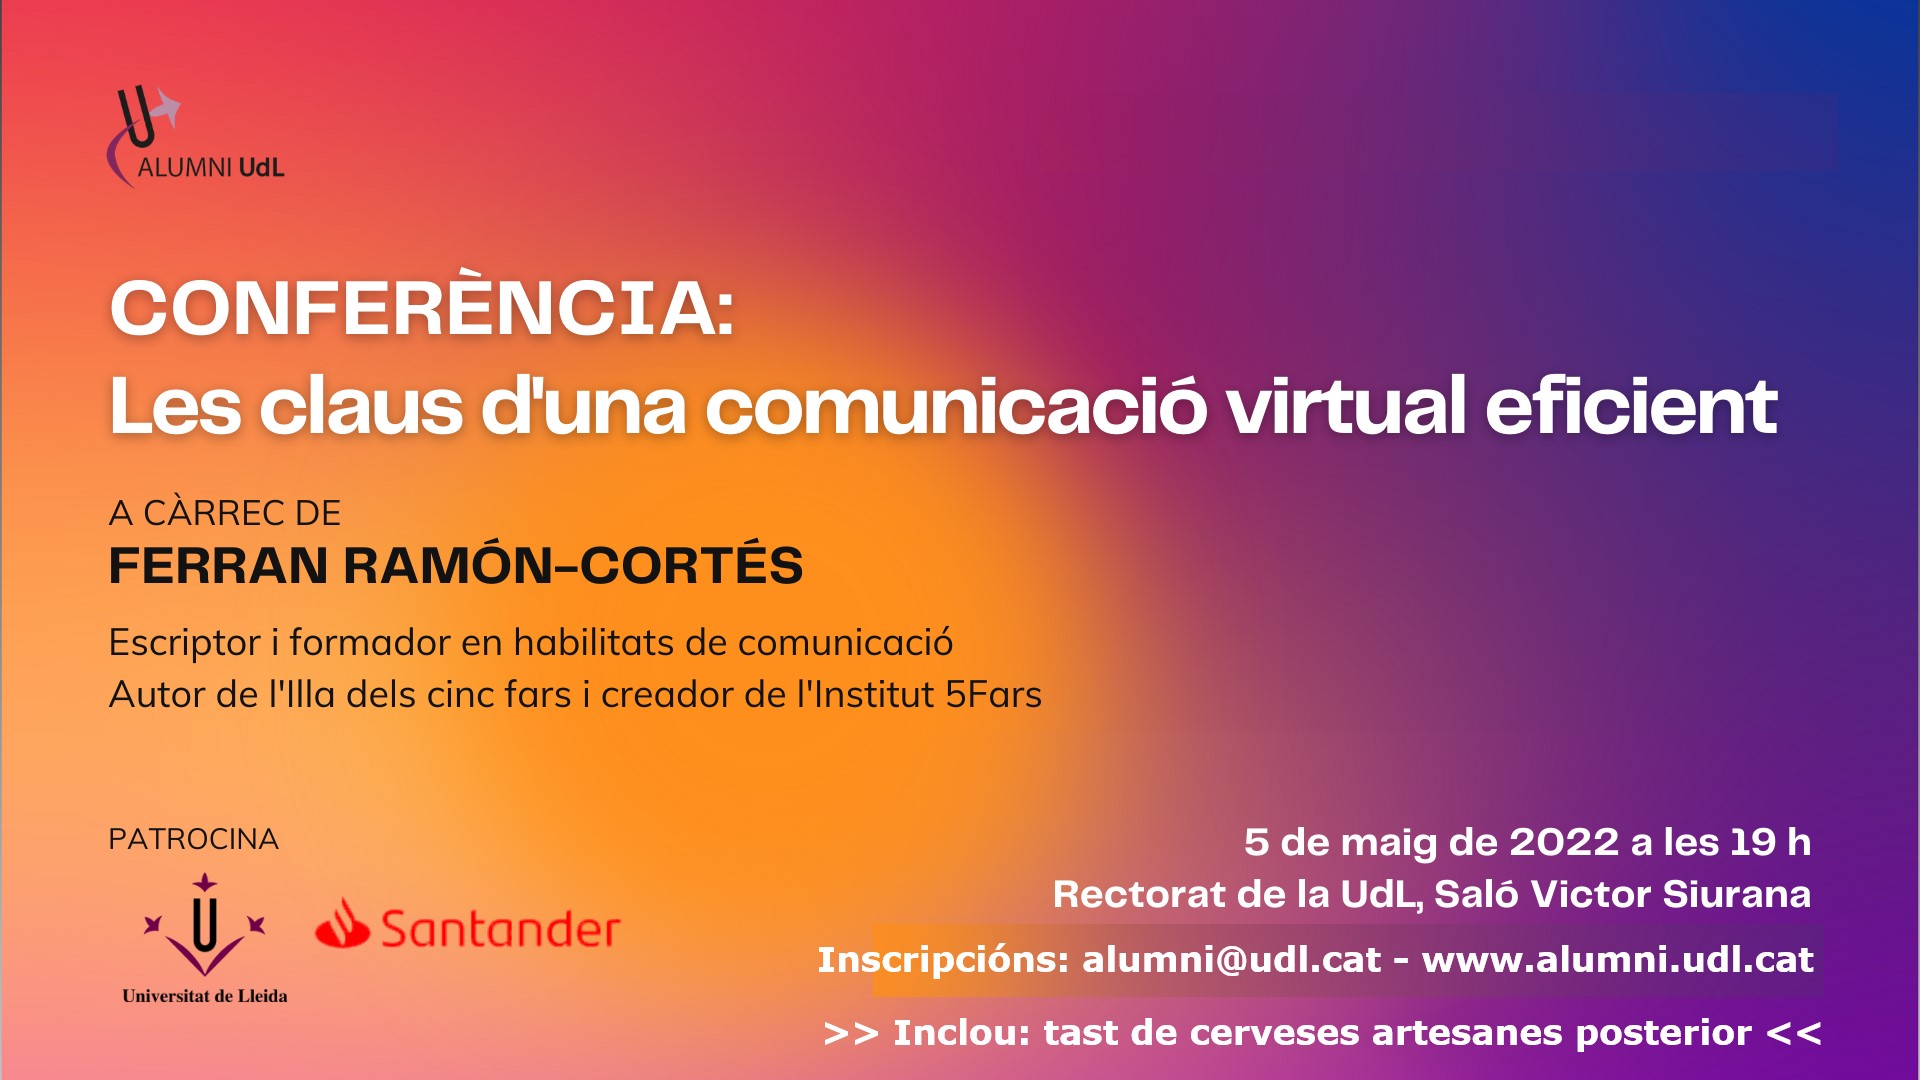 Conferència "Les claus d'una comunicació virtual eficient": A càrrec de Ferran Ramón-Cortés